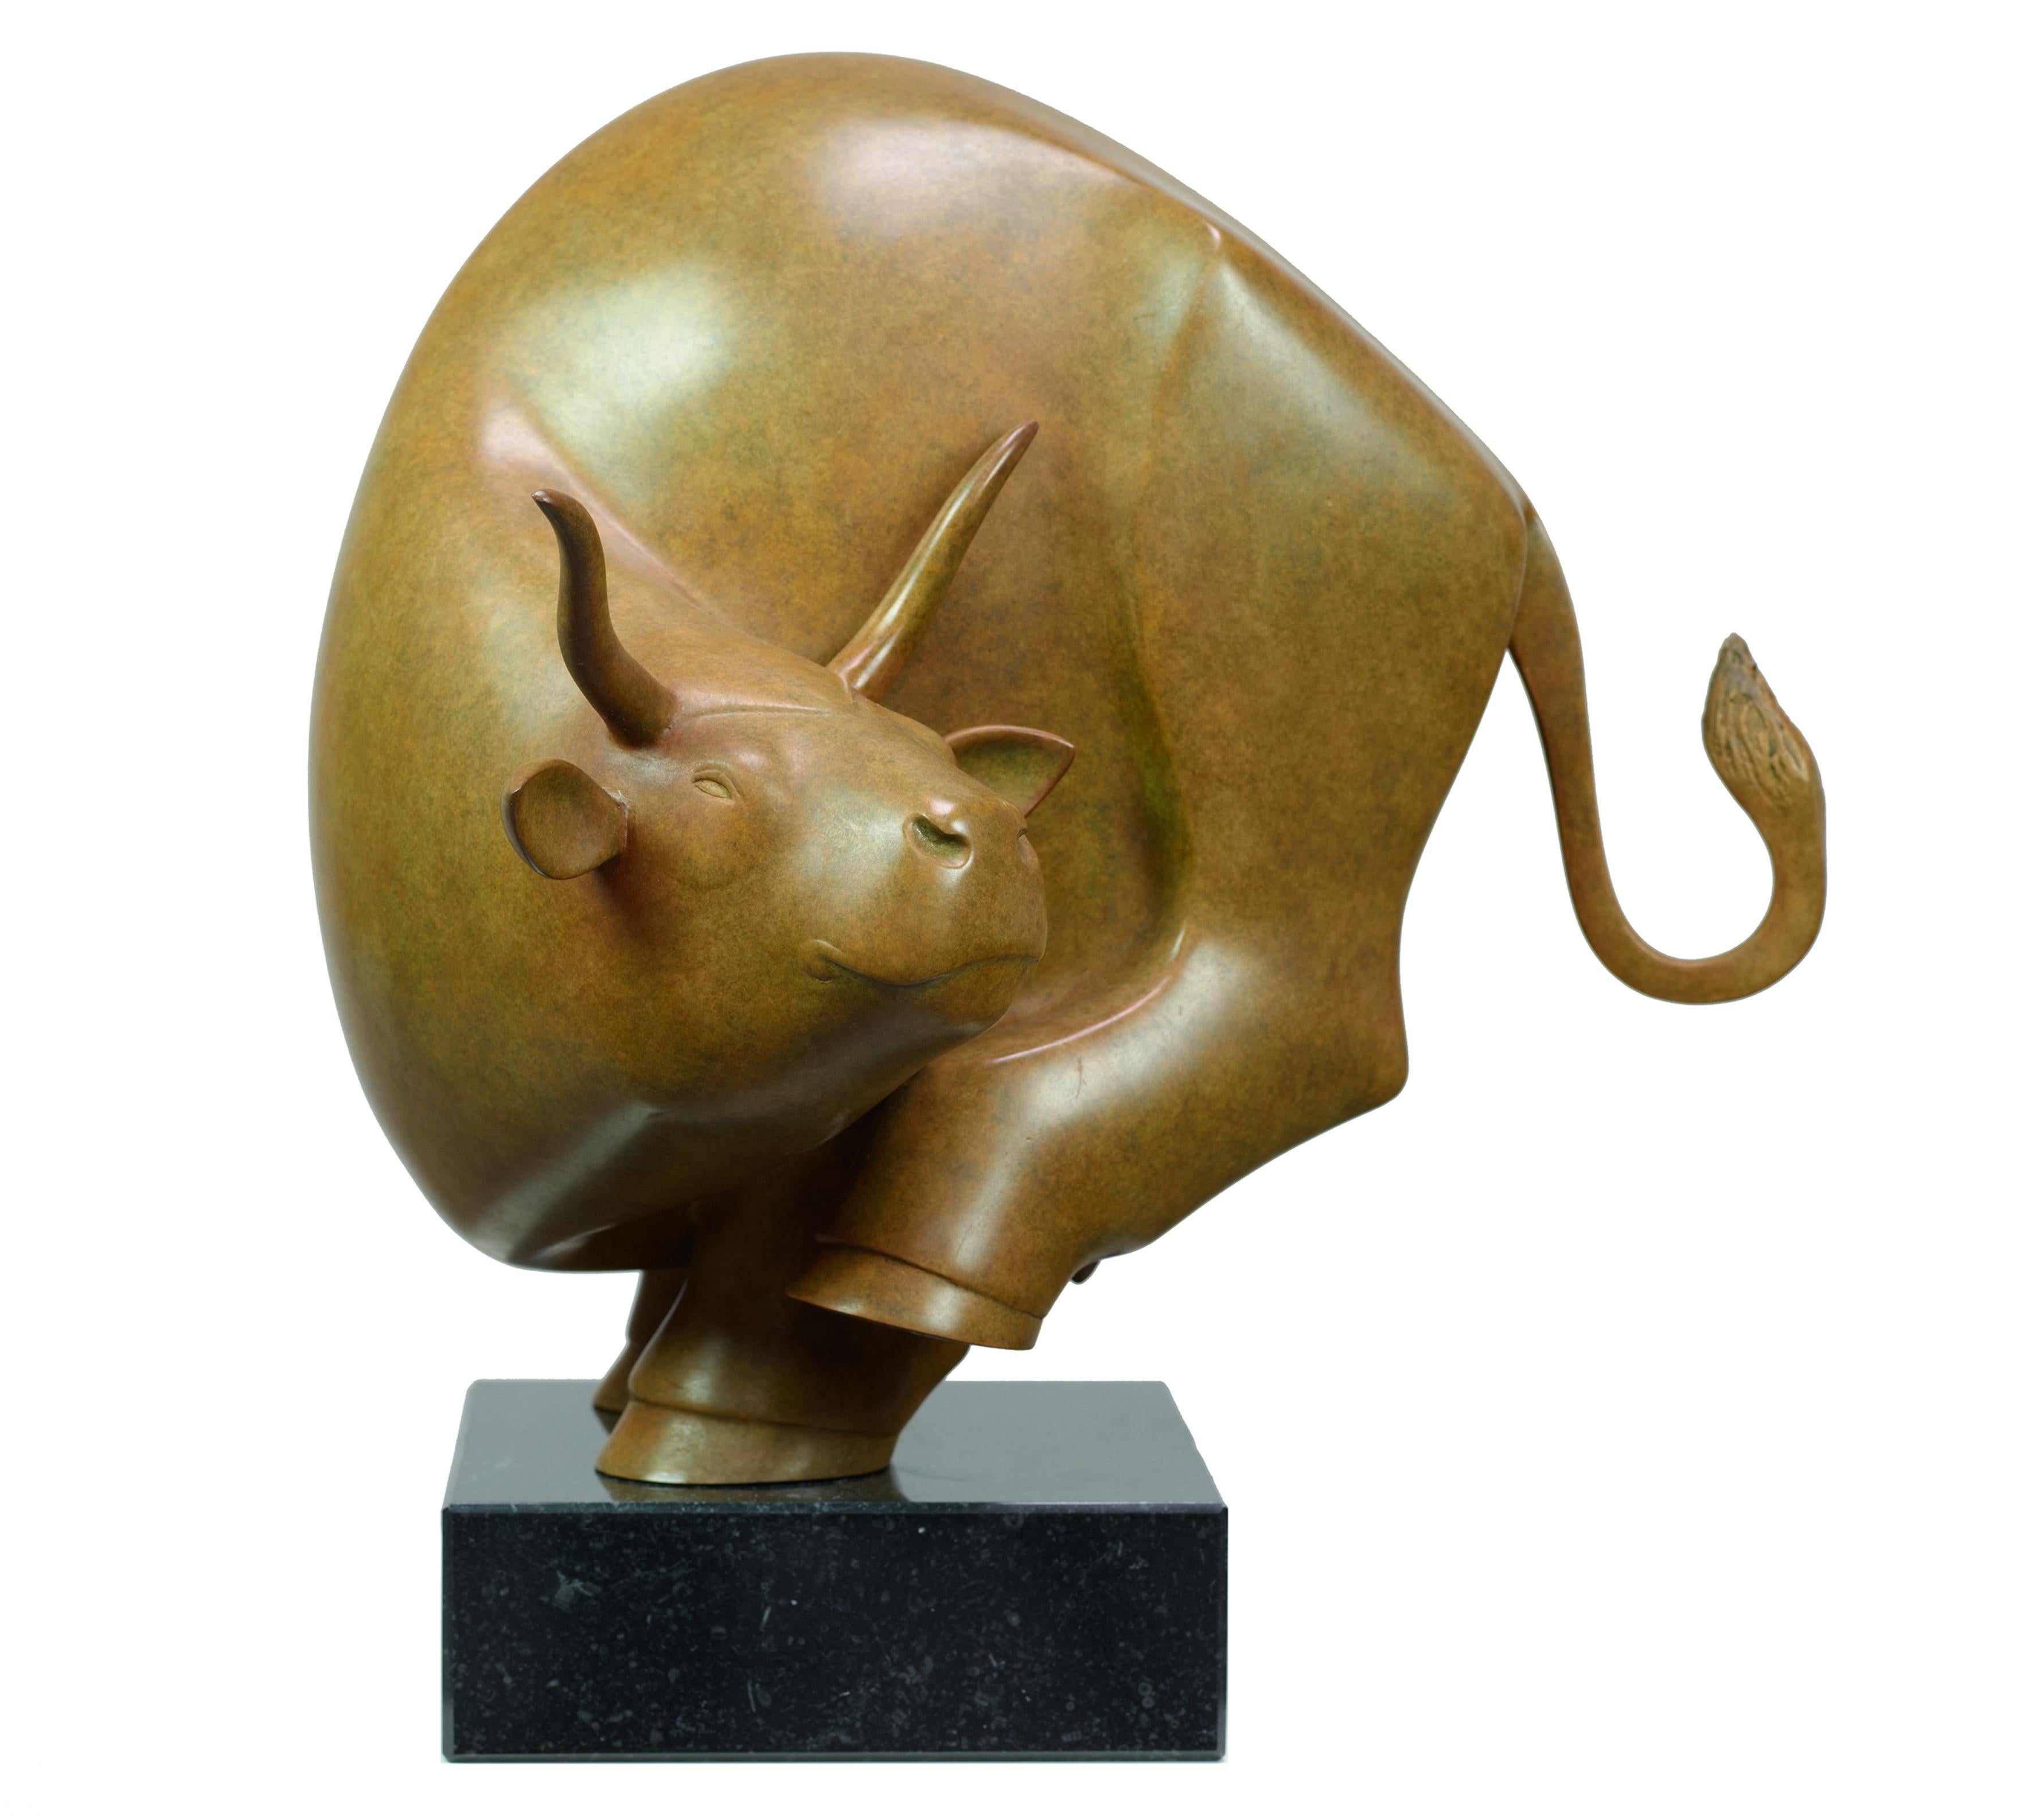 Evert den Hartog Figurative Sculpture - Stier Klein Bull Small Bronze Sculpture Animal Contemporary